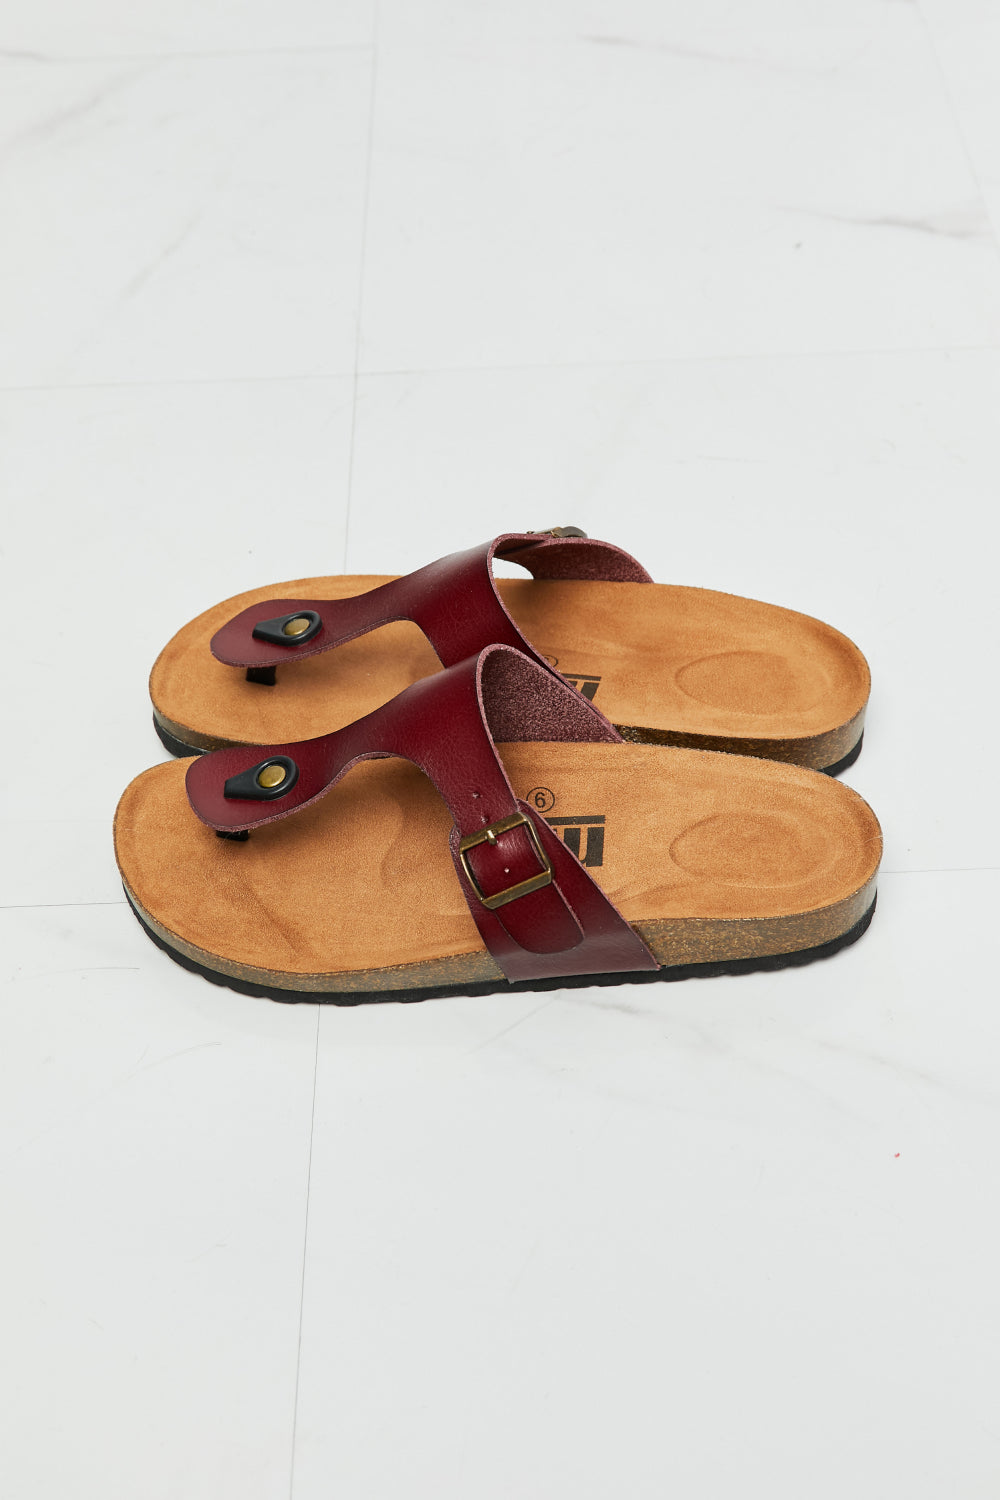 MMShoes T-Strap Flip-Flop Slide On Flat Cork Footbed Comfort Sandals in Brown Drift Away